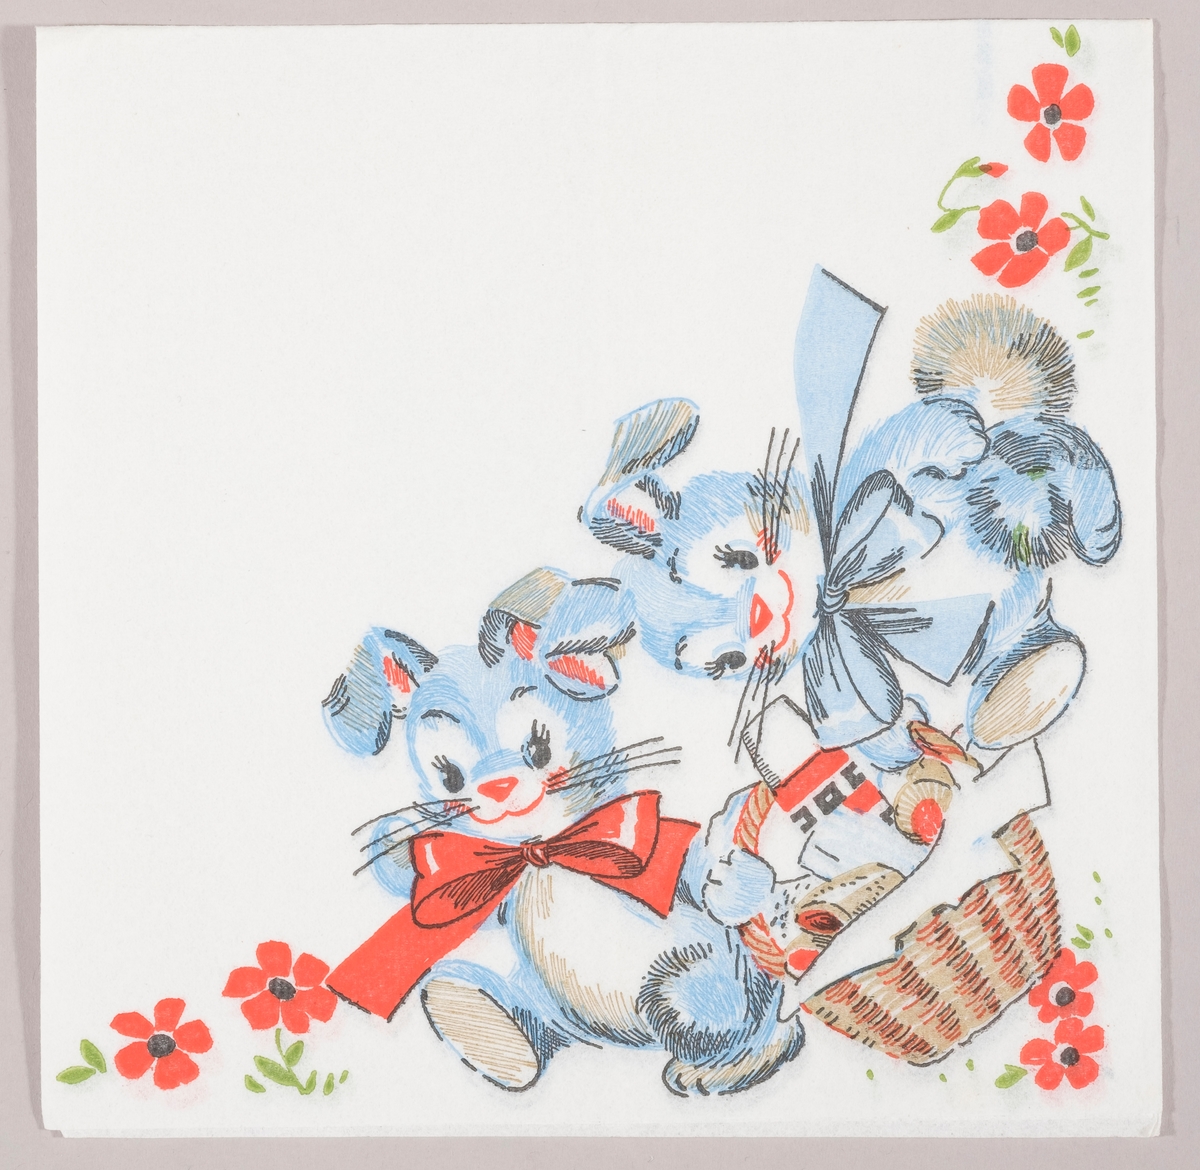 To blå påskeharer med sløyfer om halsen bærer på en flettet piknikkurv i en eng med røde blomster.